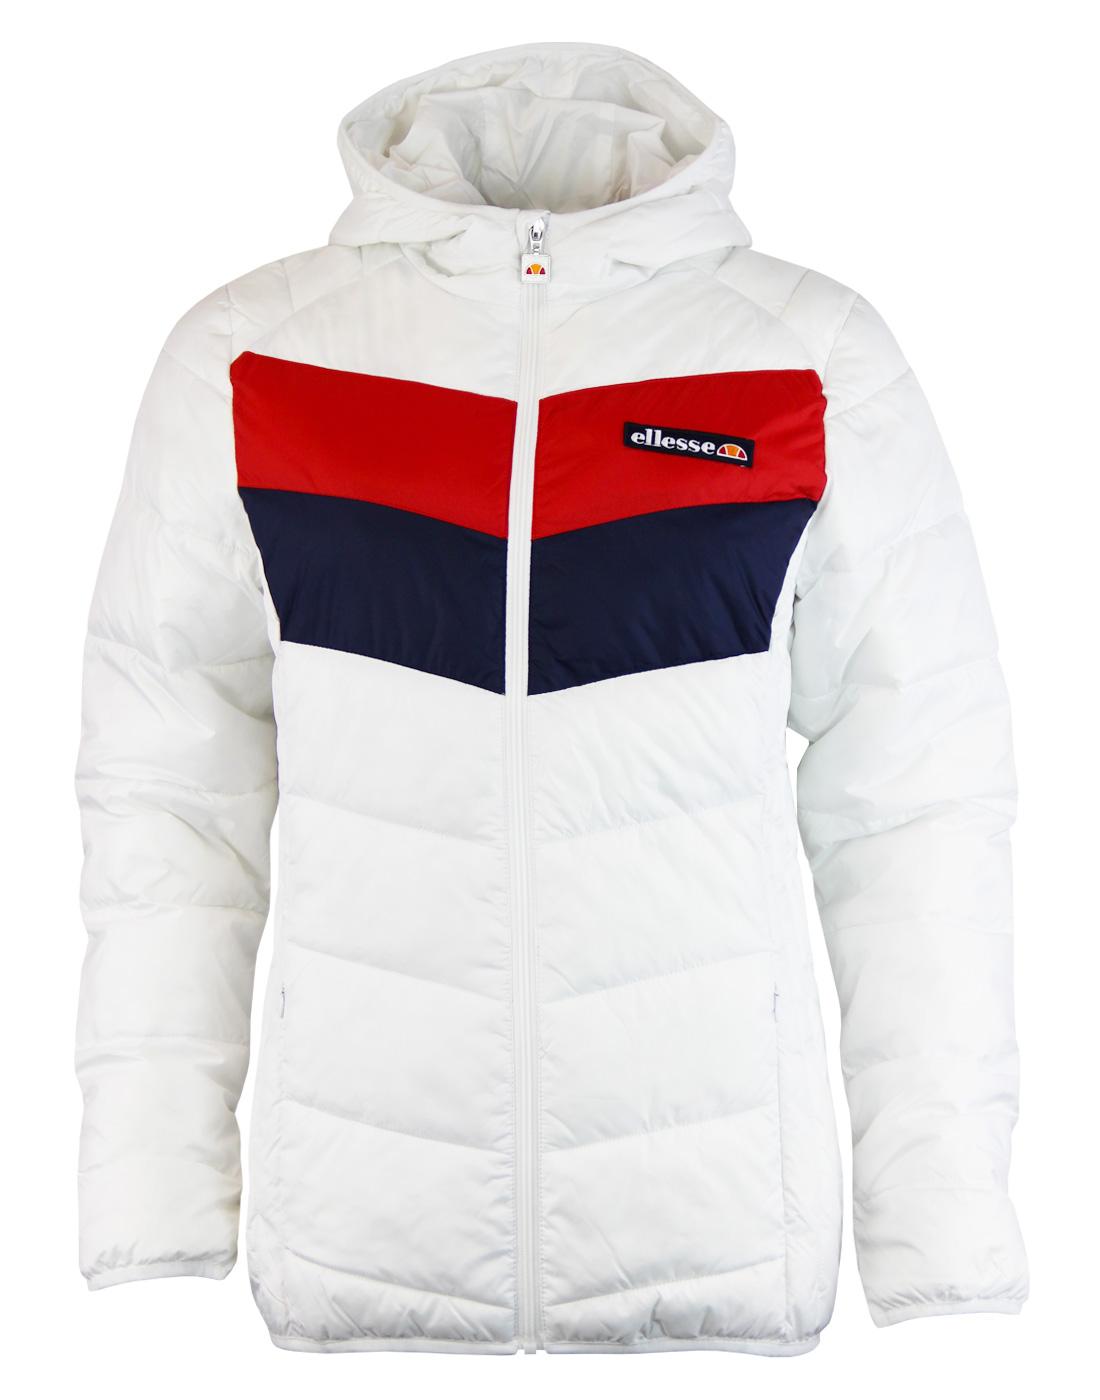 Ginette ELLESSE Retro 70s Chevron Ski Jacket (W)